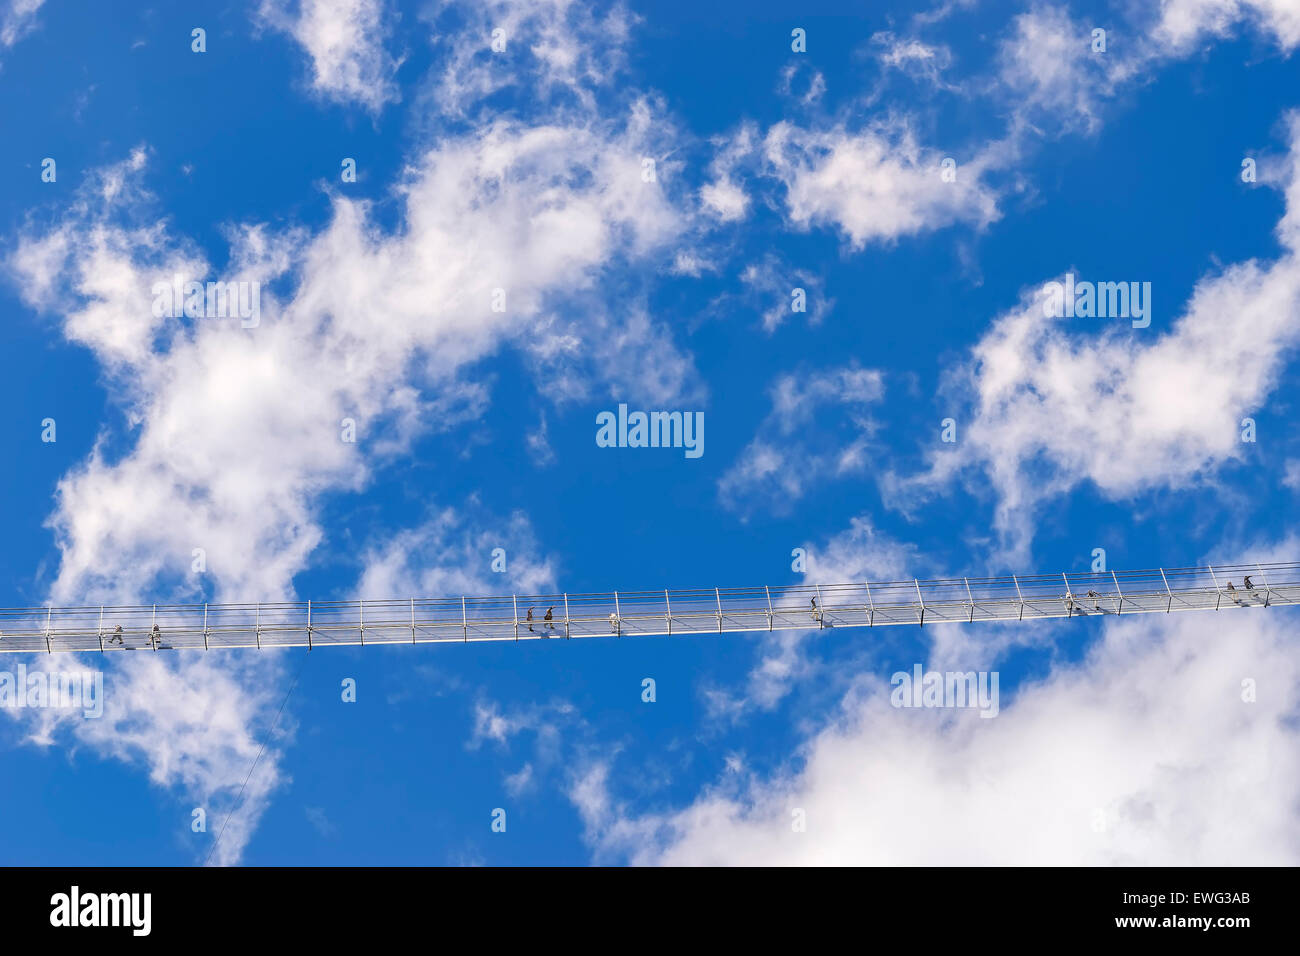 Image d'un pont des chaînes en haute altitude avec ciel bleu et nuages Banque D'Images